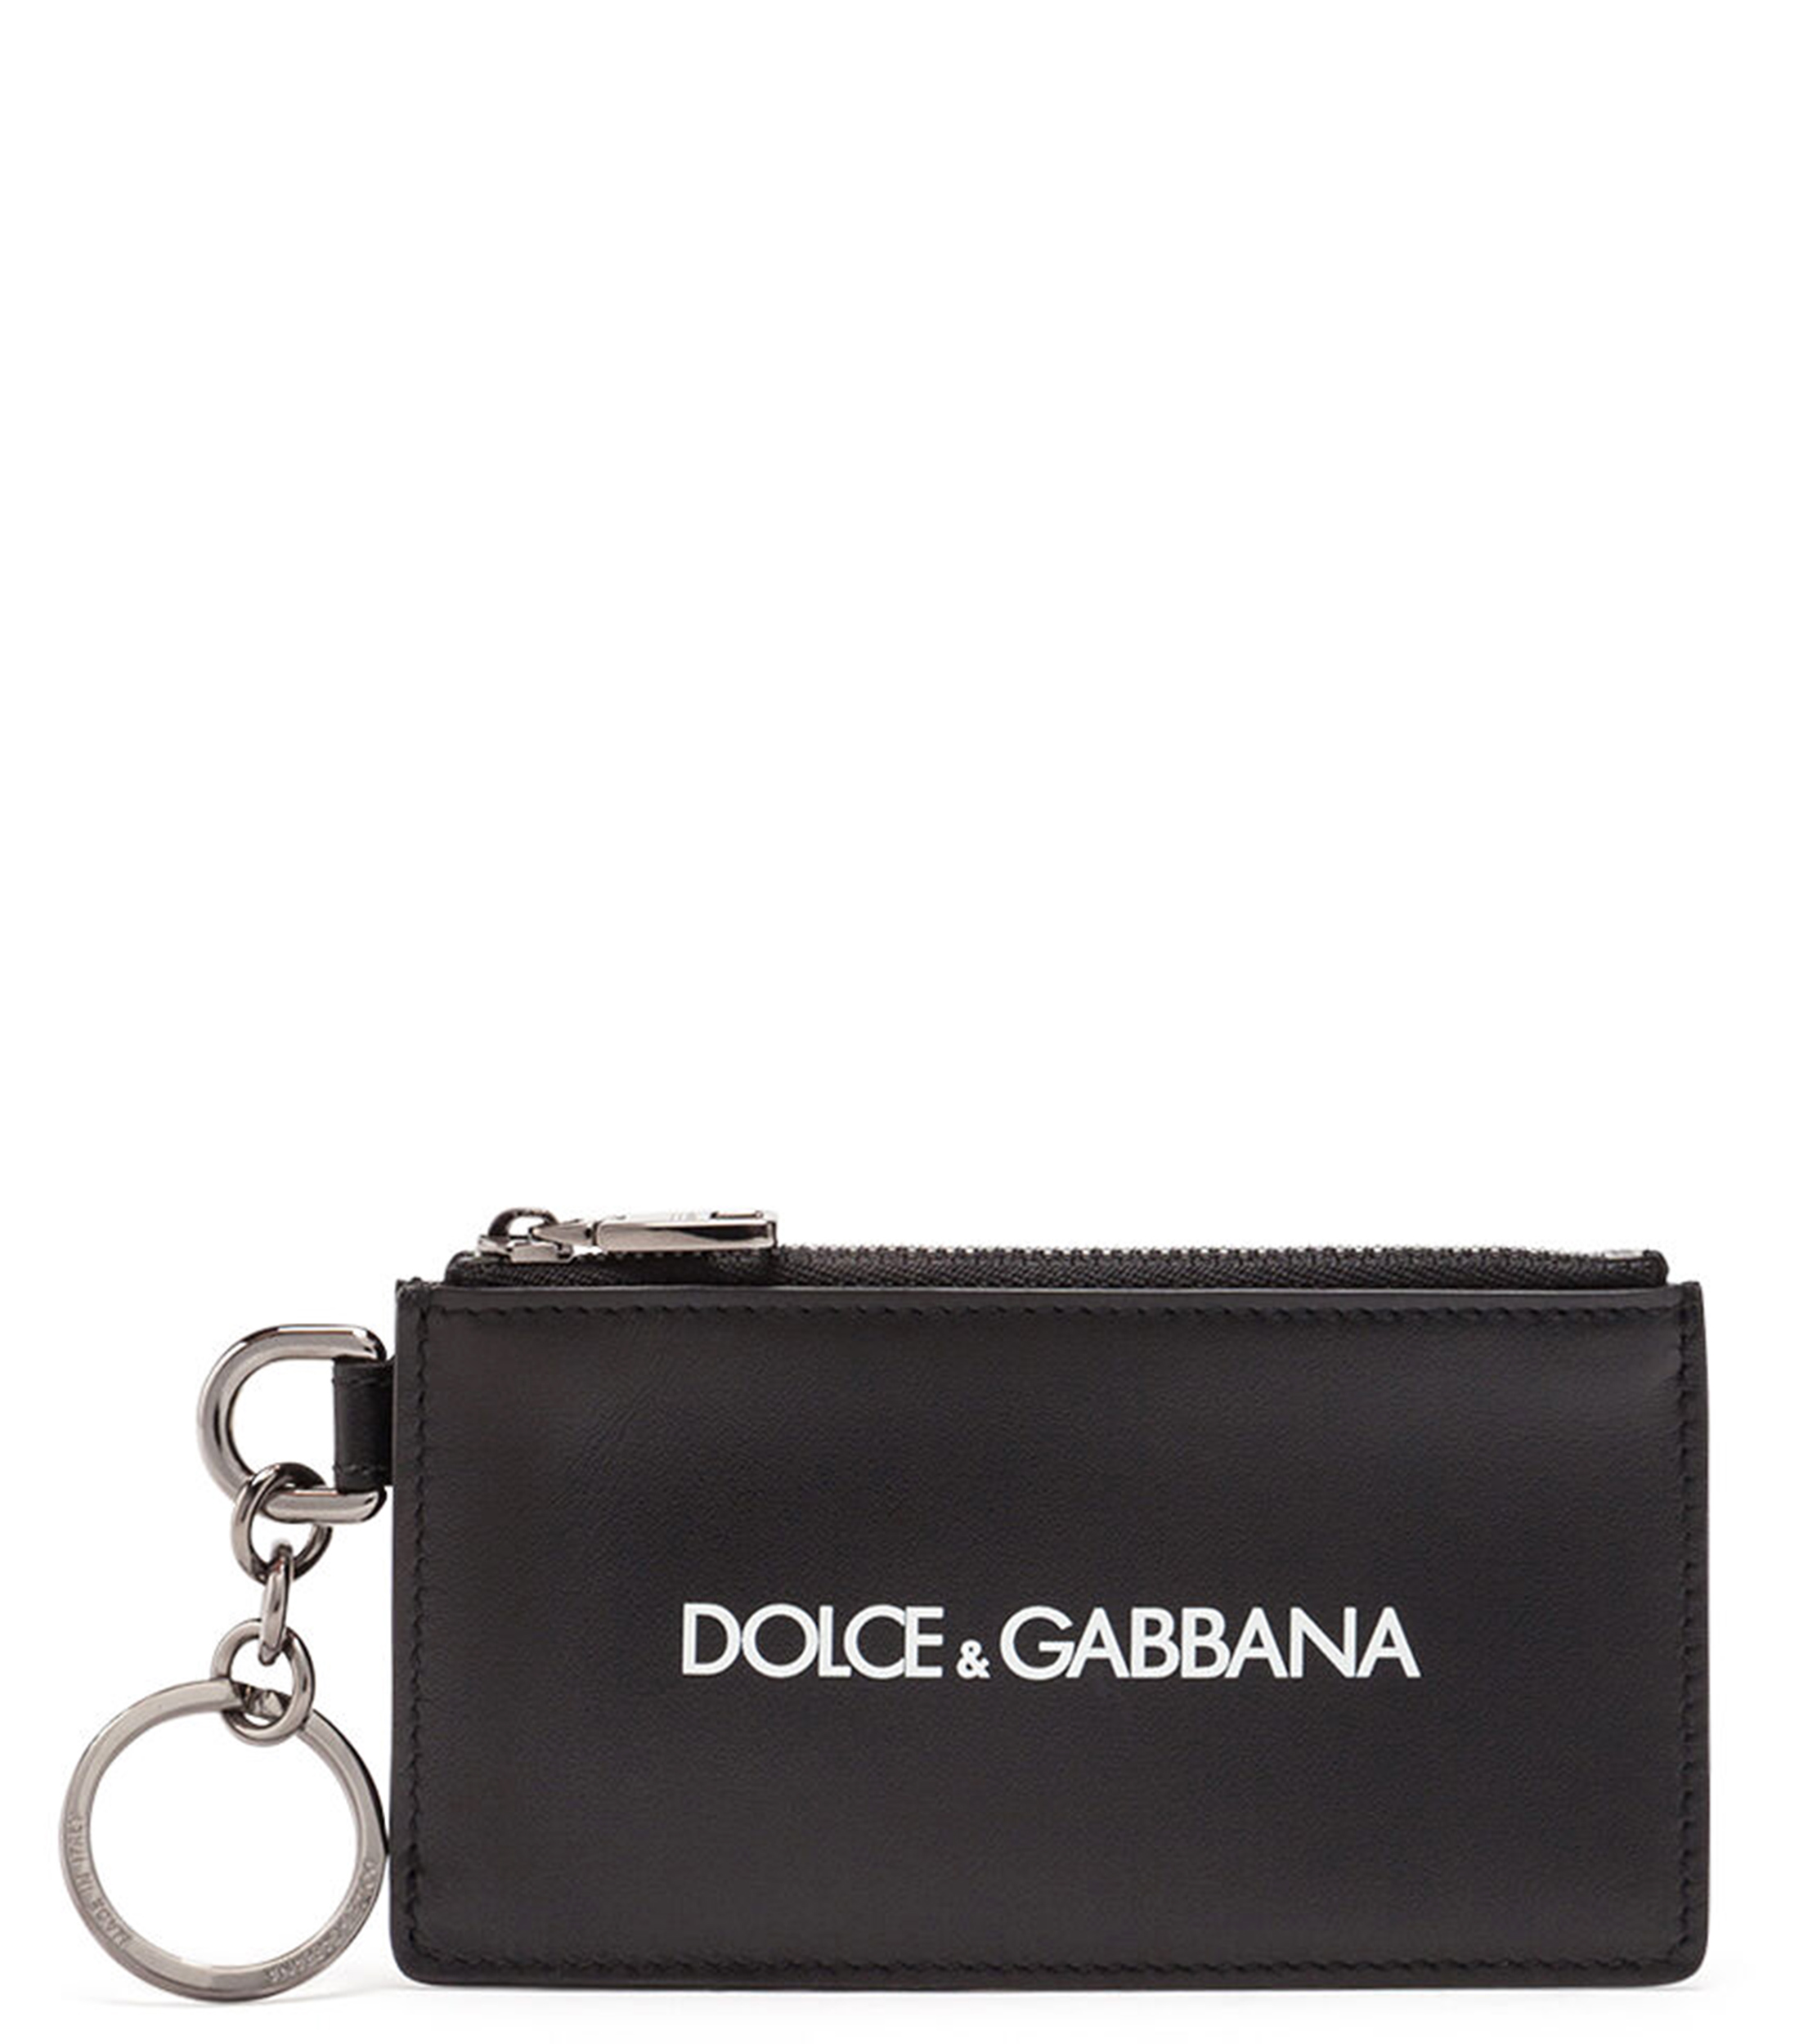 Dolce & Gabbana Tarjetero - El Palacio de Hierro